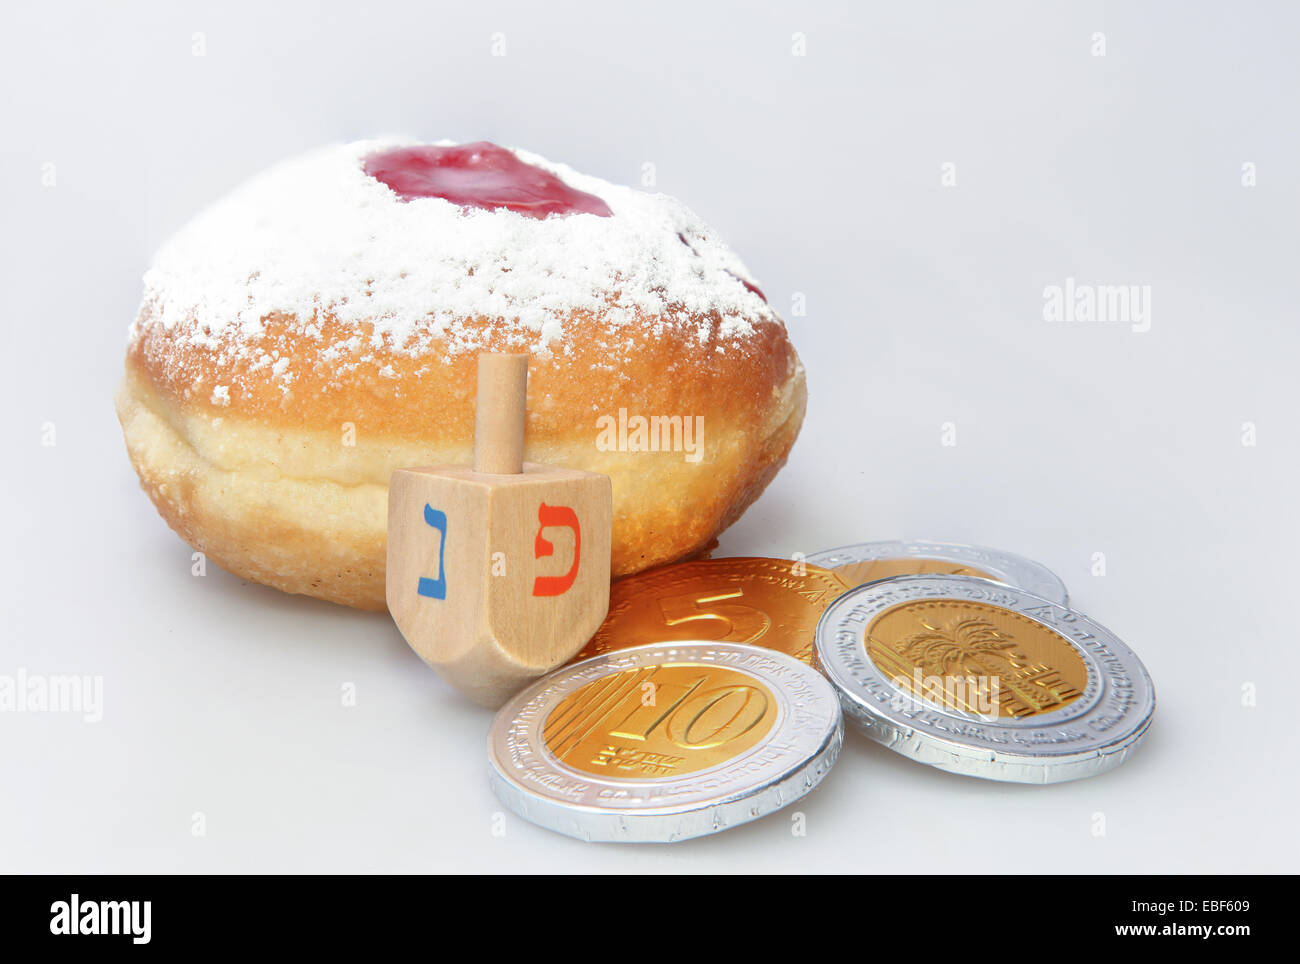 Donut y Hanukkah trompo - Tradicional fiesta judía de alimentos y juguetes. Foto de stock